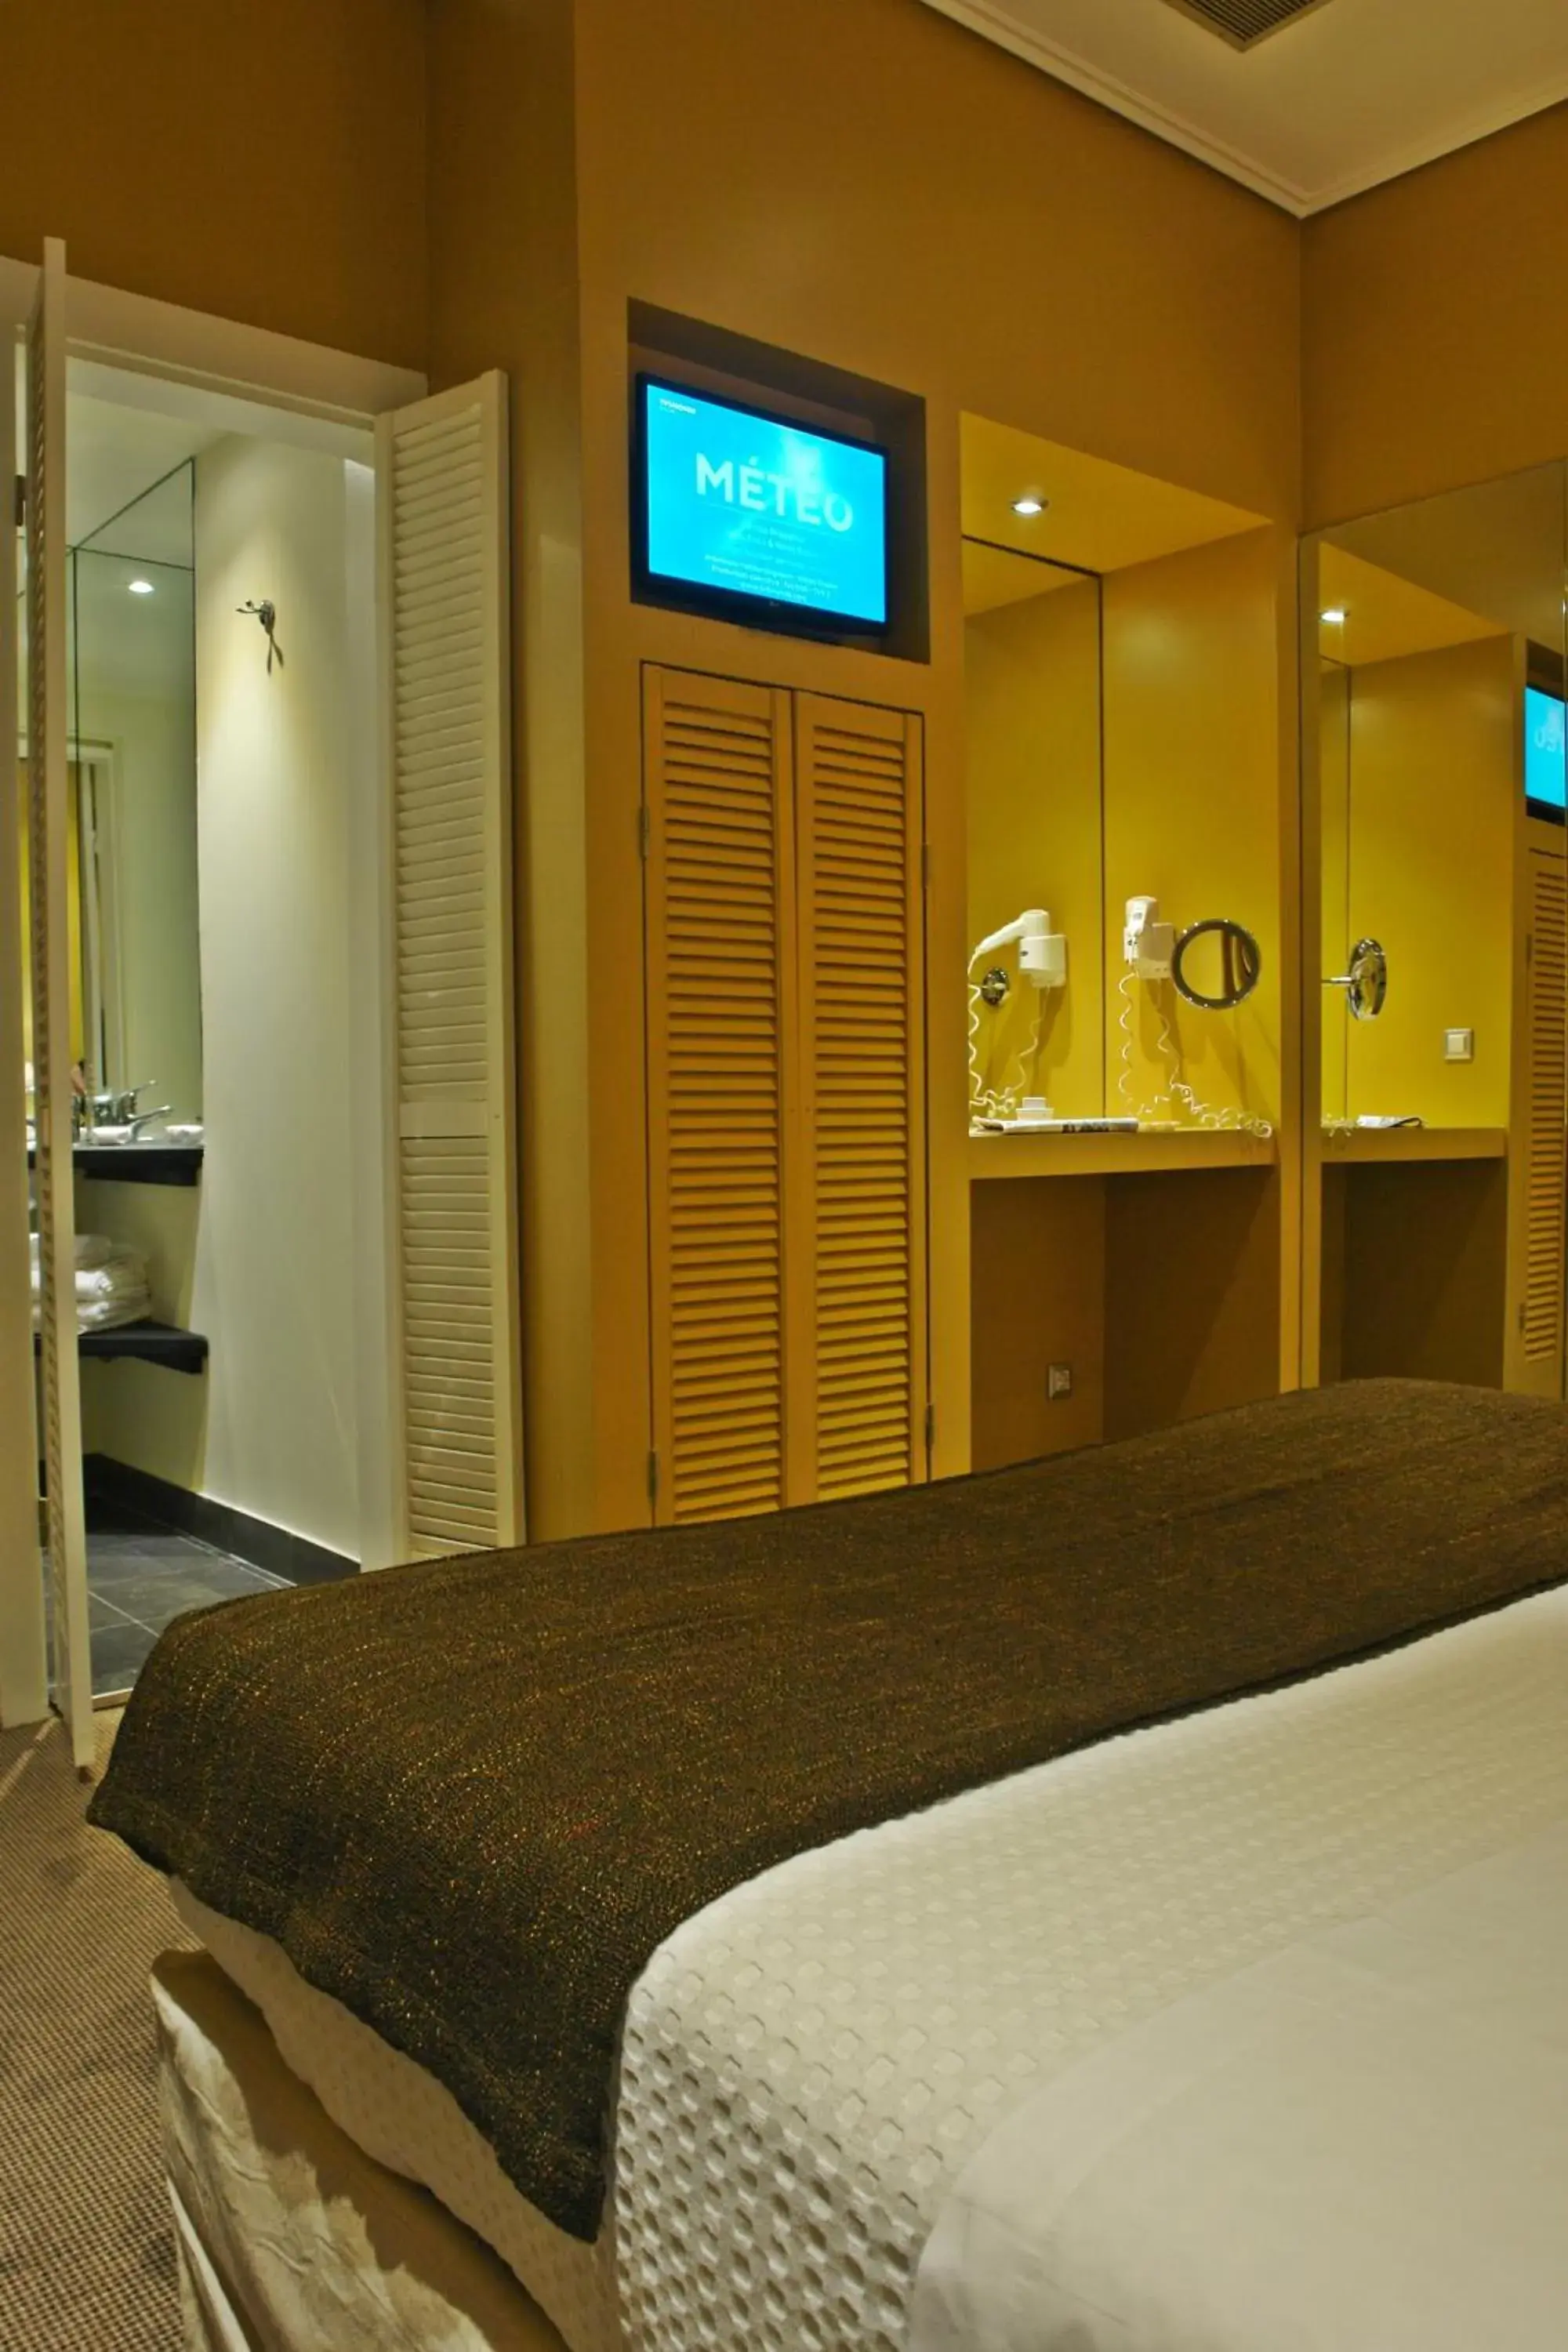 Bed, Room Photo in Semeli Hotel